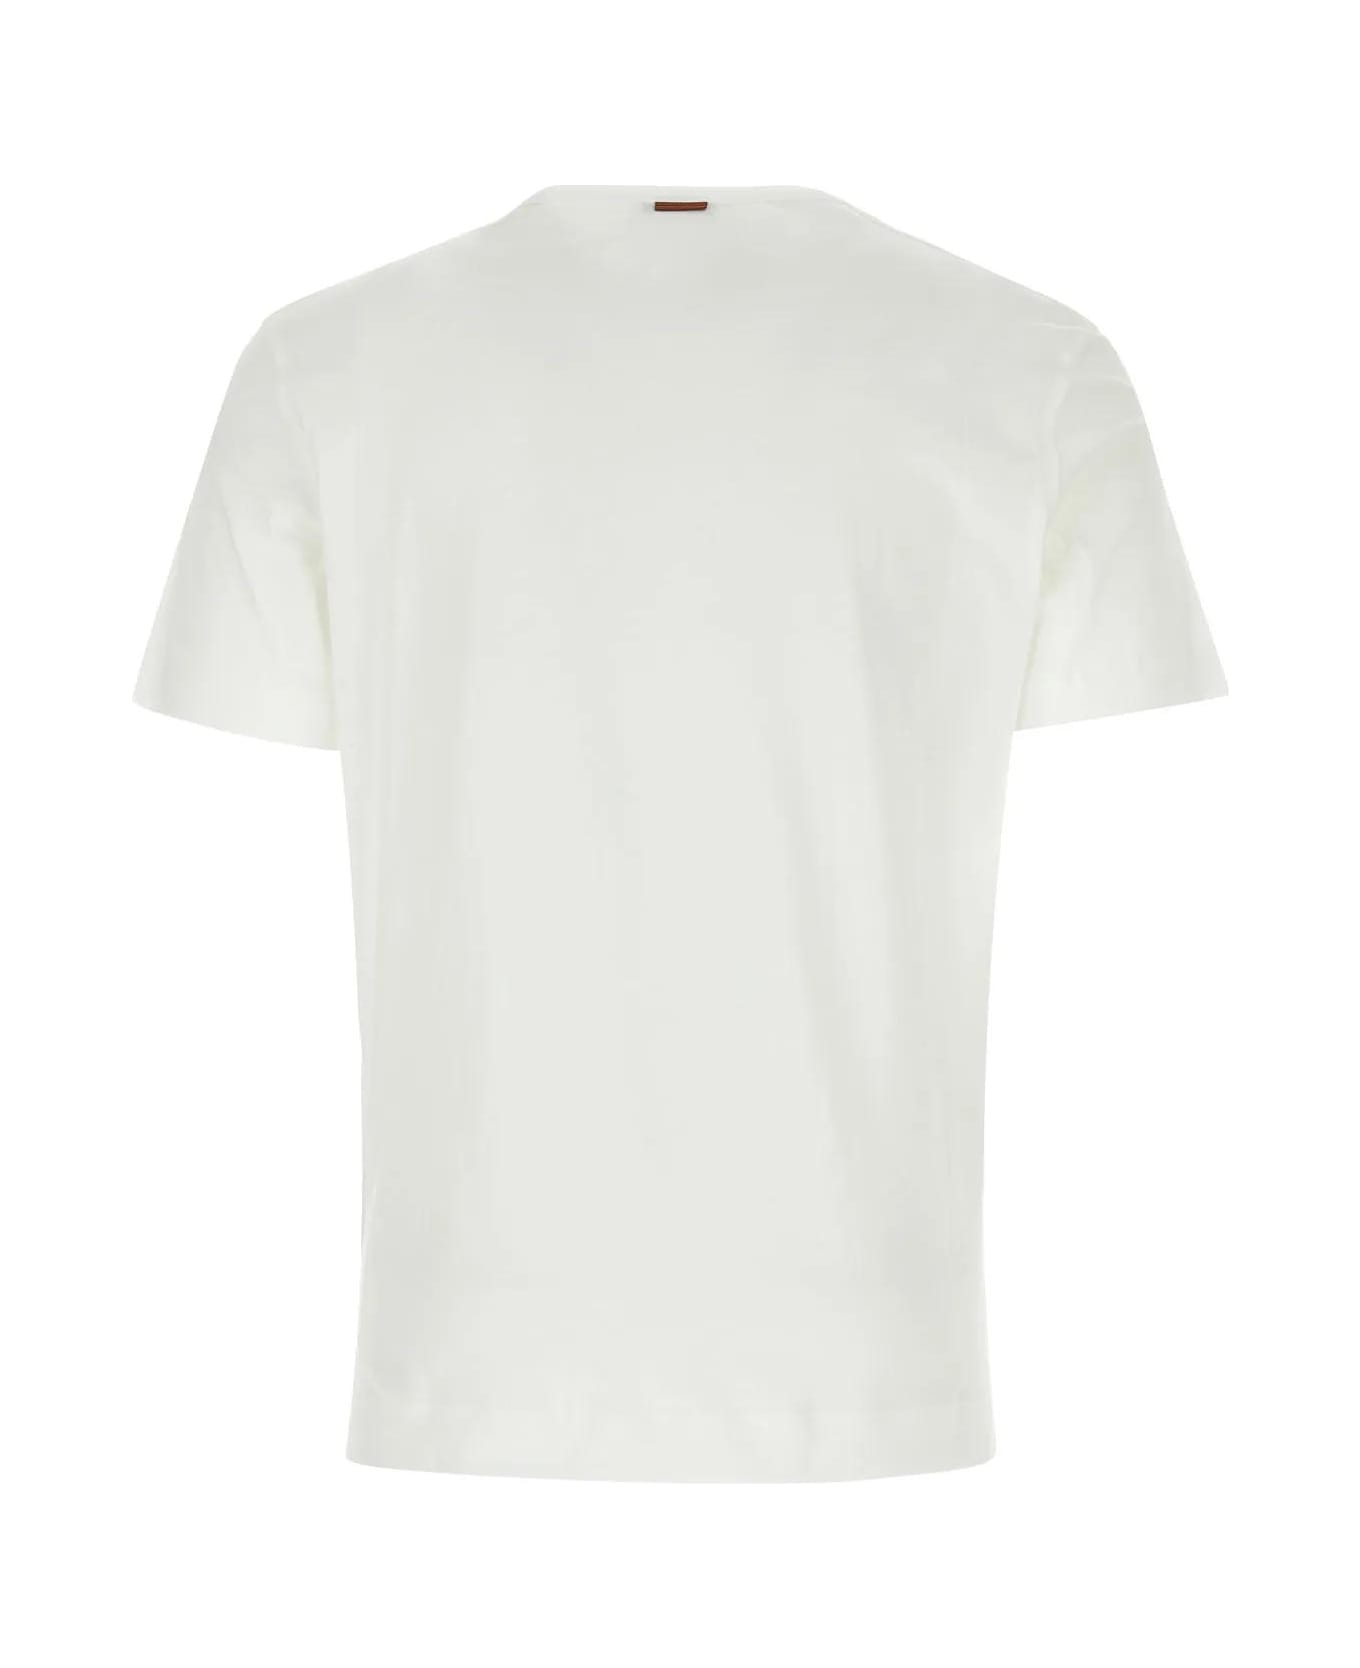 Zegna White Cotton T-shirt - White シャツ